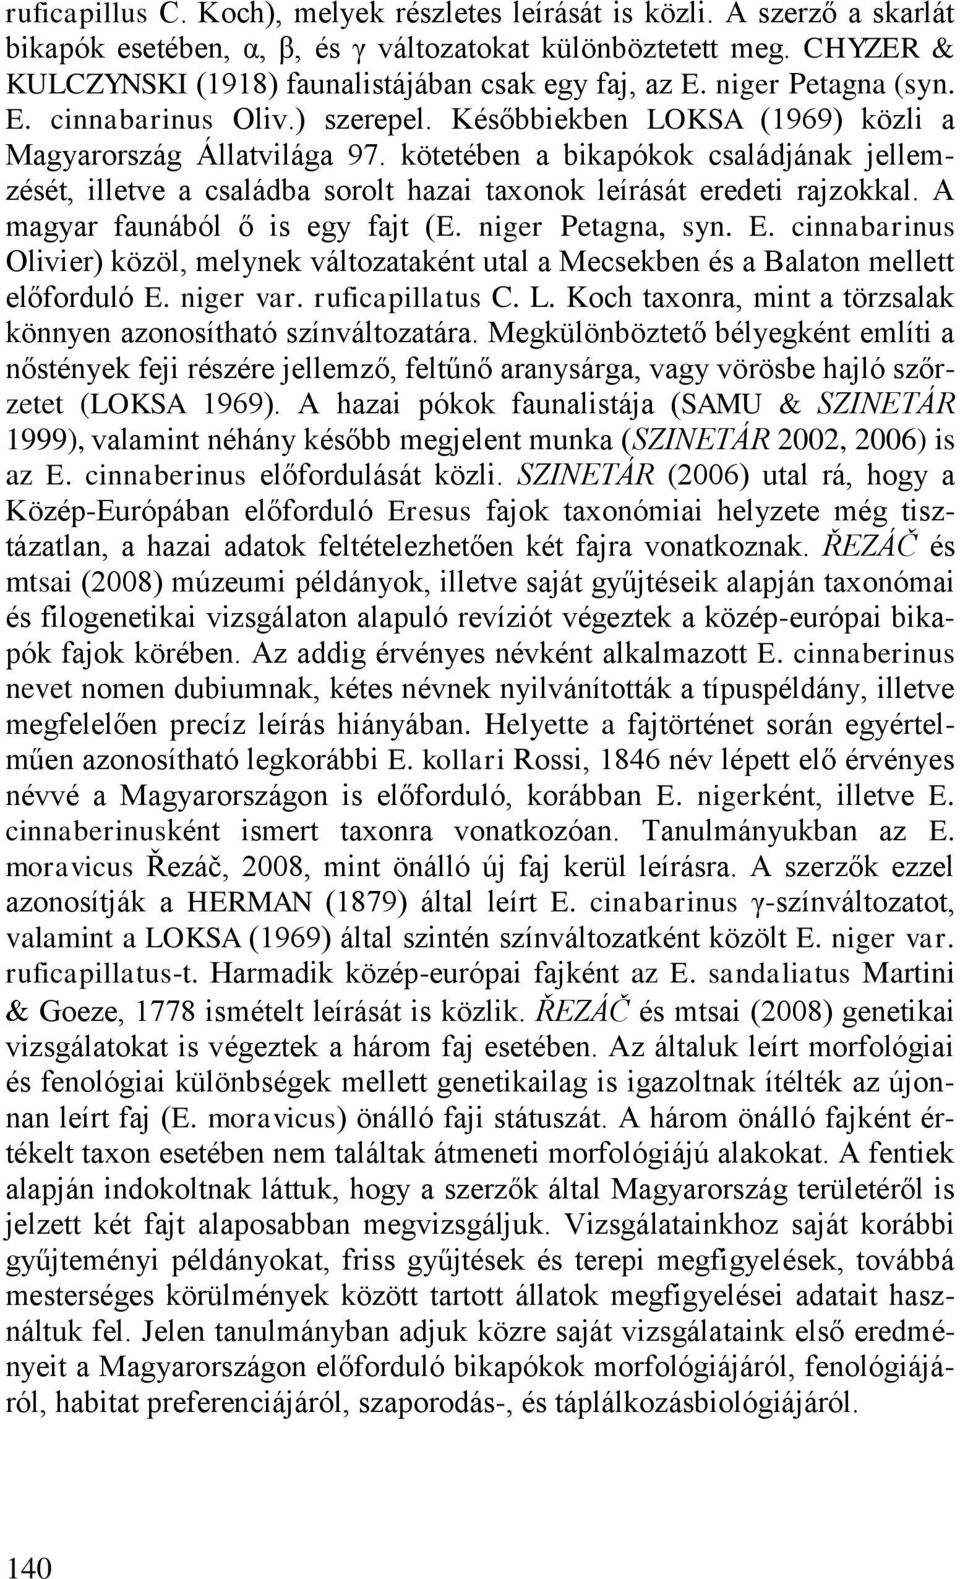 kötetében a bikapókok családjának jellemzését, illetve a családba sorolt hazai taxonok leírását eredeti rajzokkal. A magyar faunából ő is egy fajt (E. niger Petagna, syn. E.